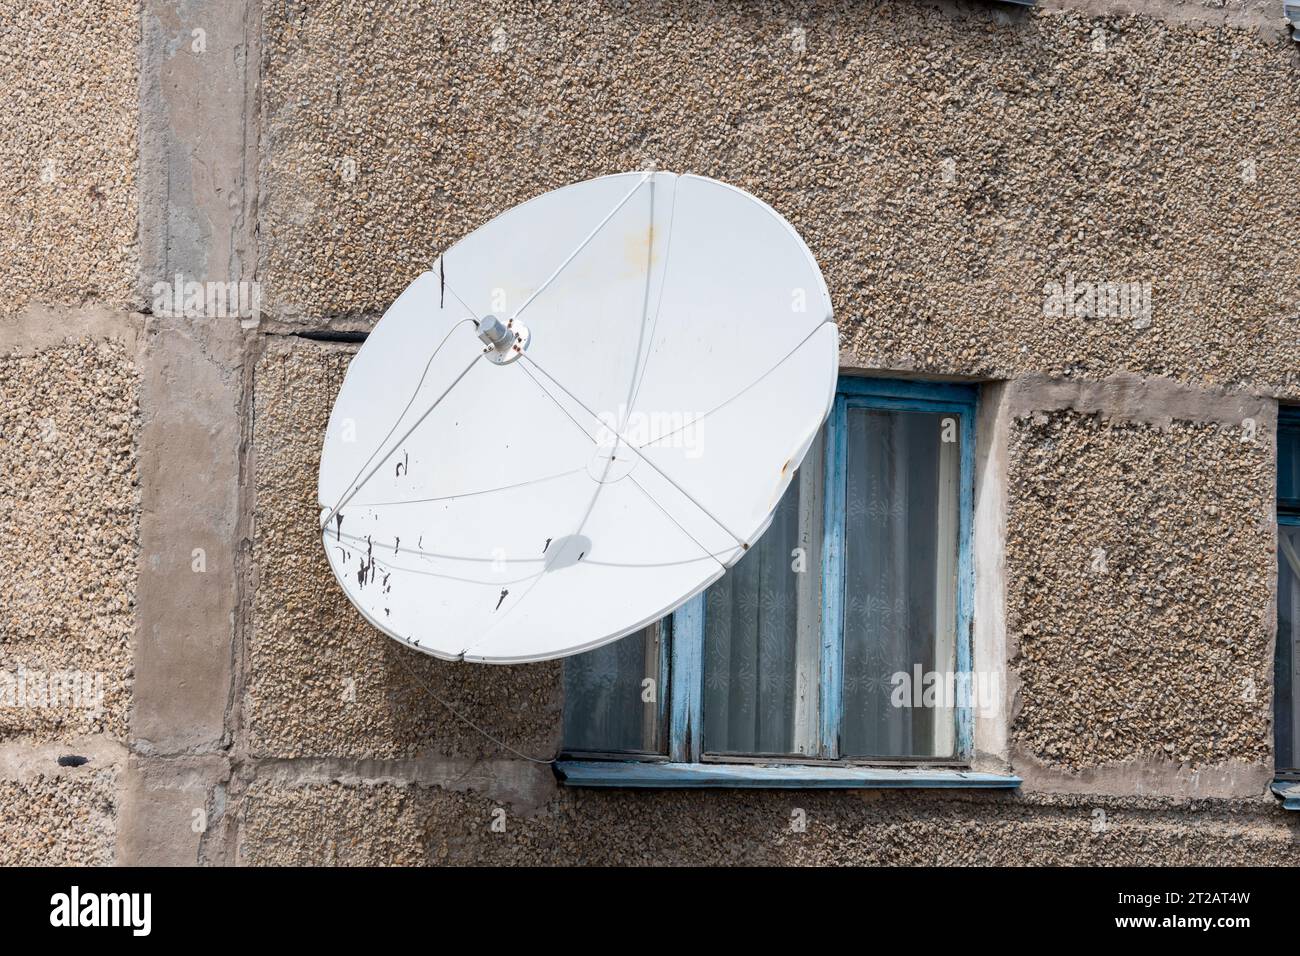 Antenne TV satellite sur le mur de la maison. Récepteur d'antenne rond blanc pour signal radio. Antenne de ville pour télévision, radio, Internet. Banque D'Images